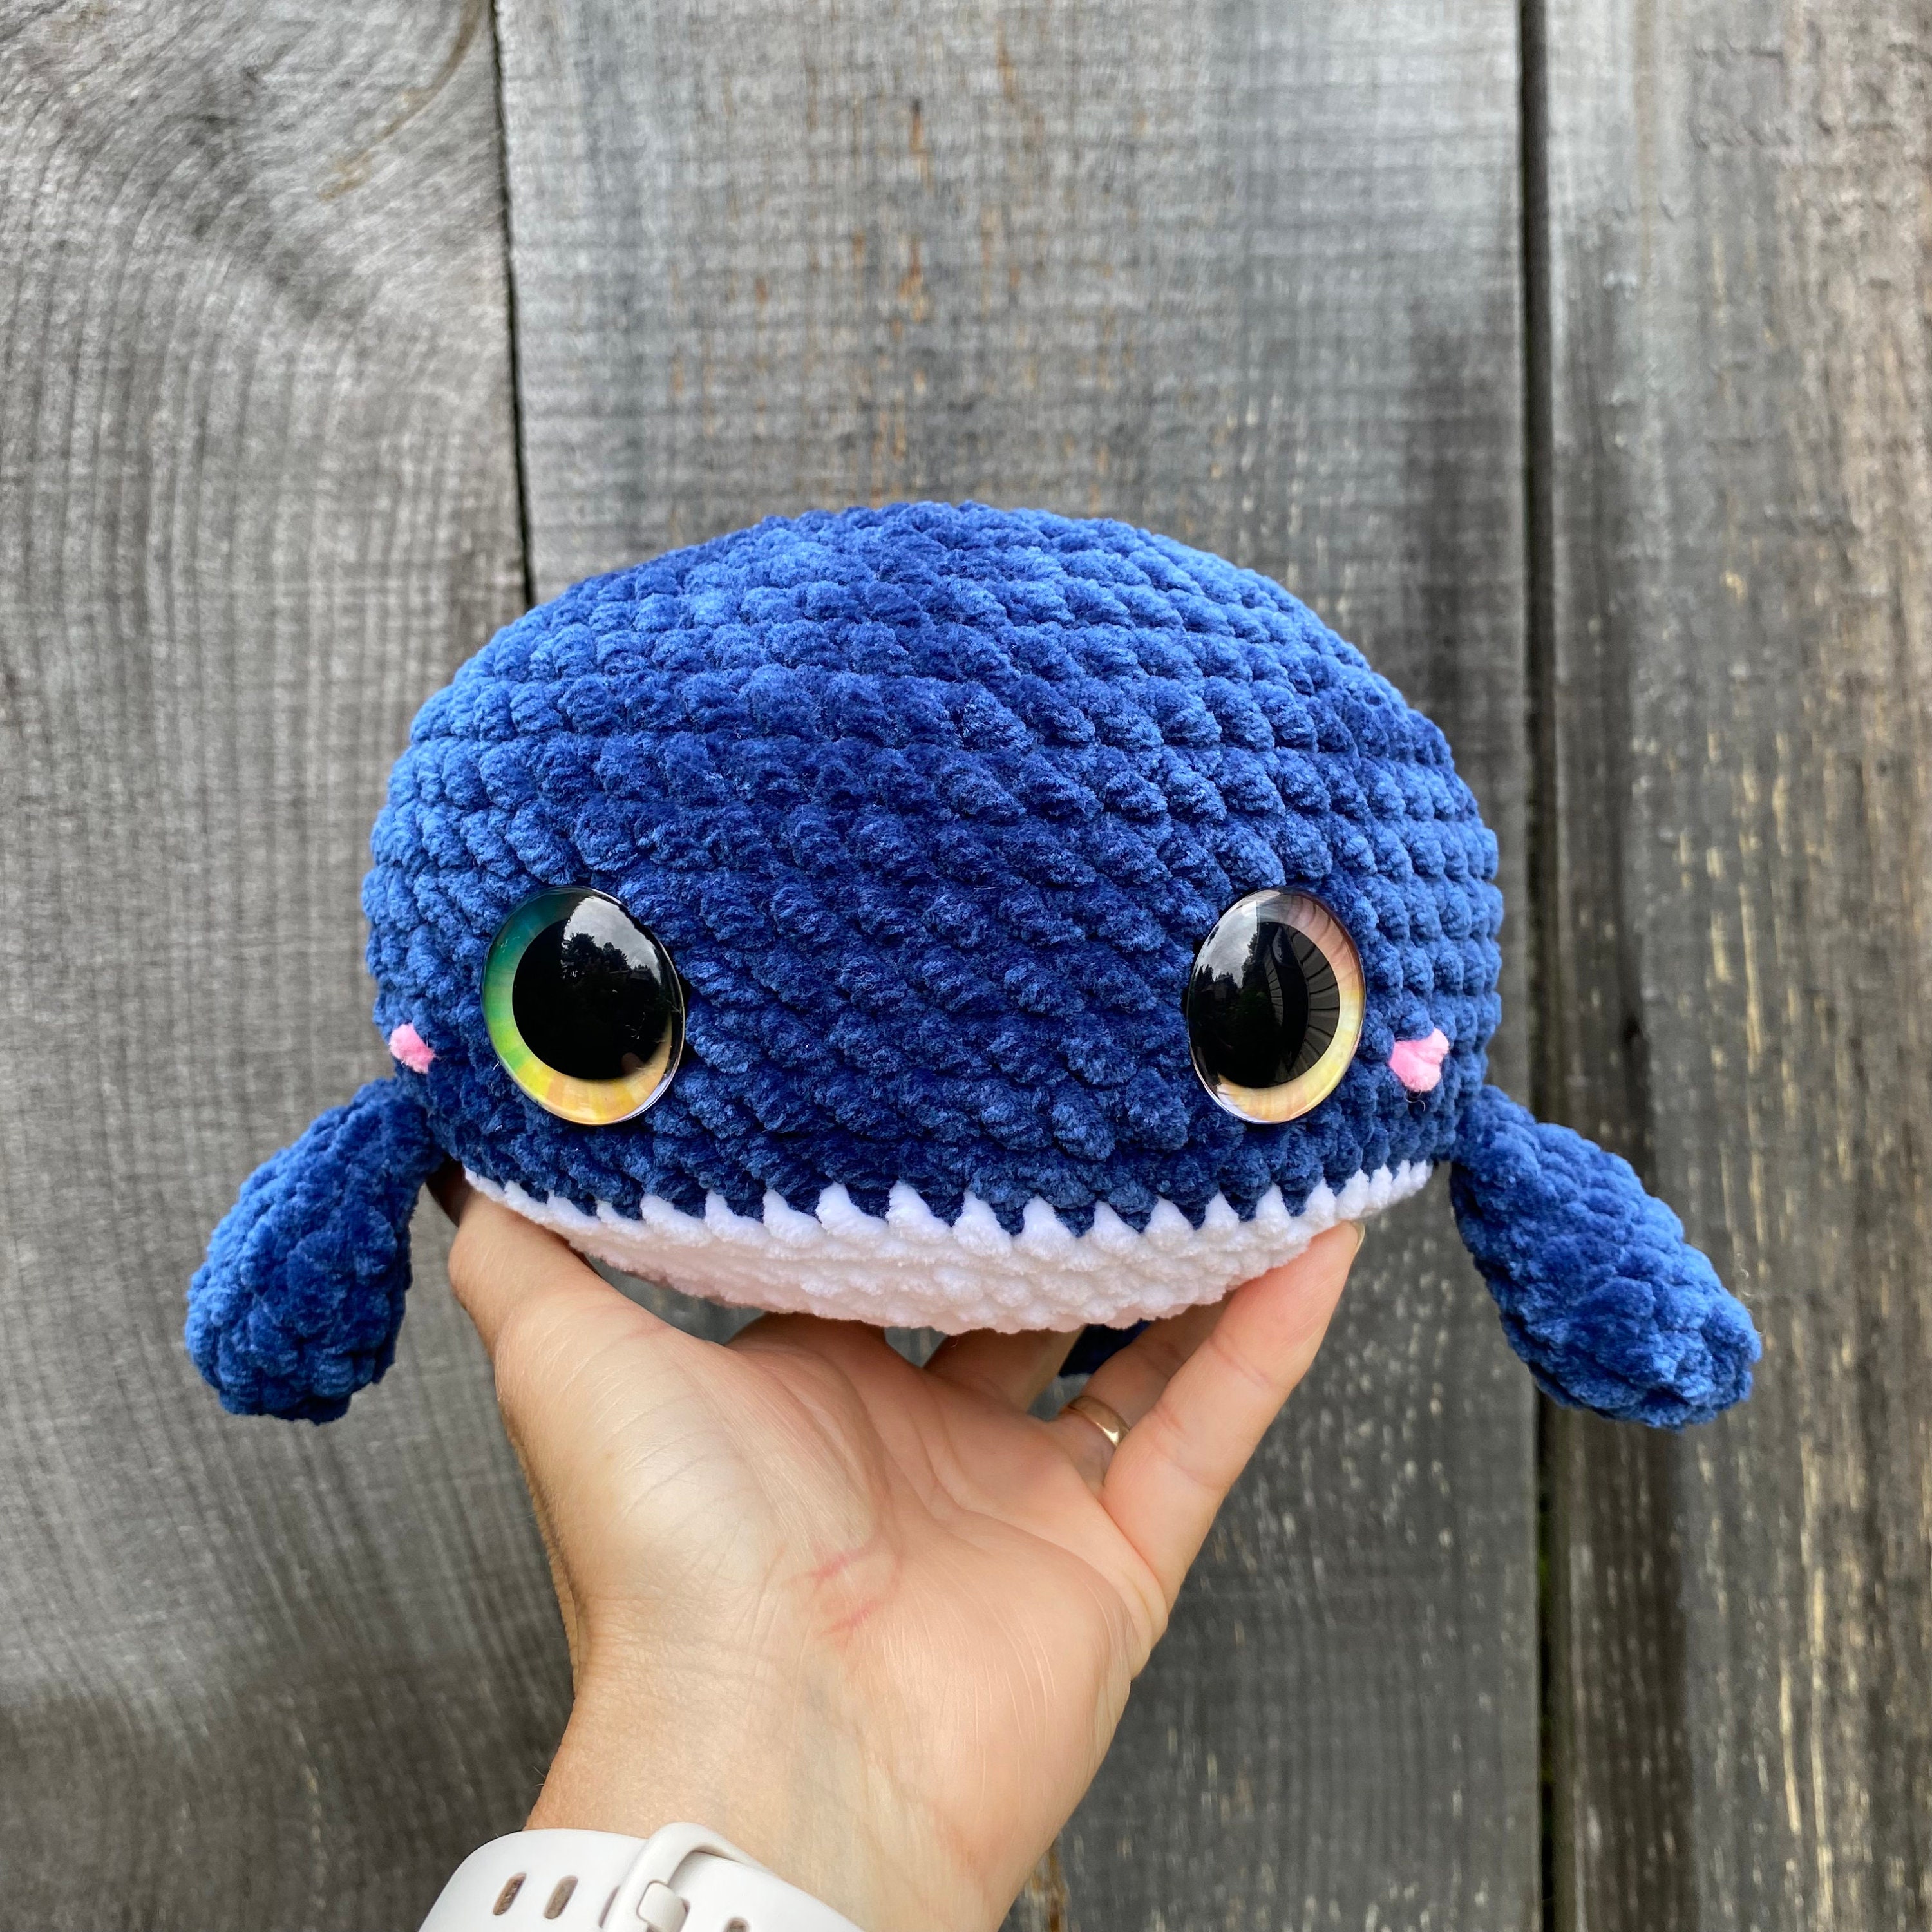 Kit à crocheter : amigurumi baleine - Croch Ta Maille